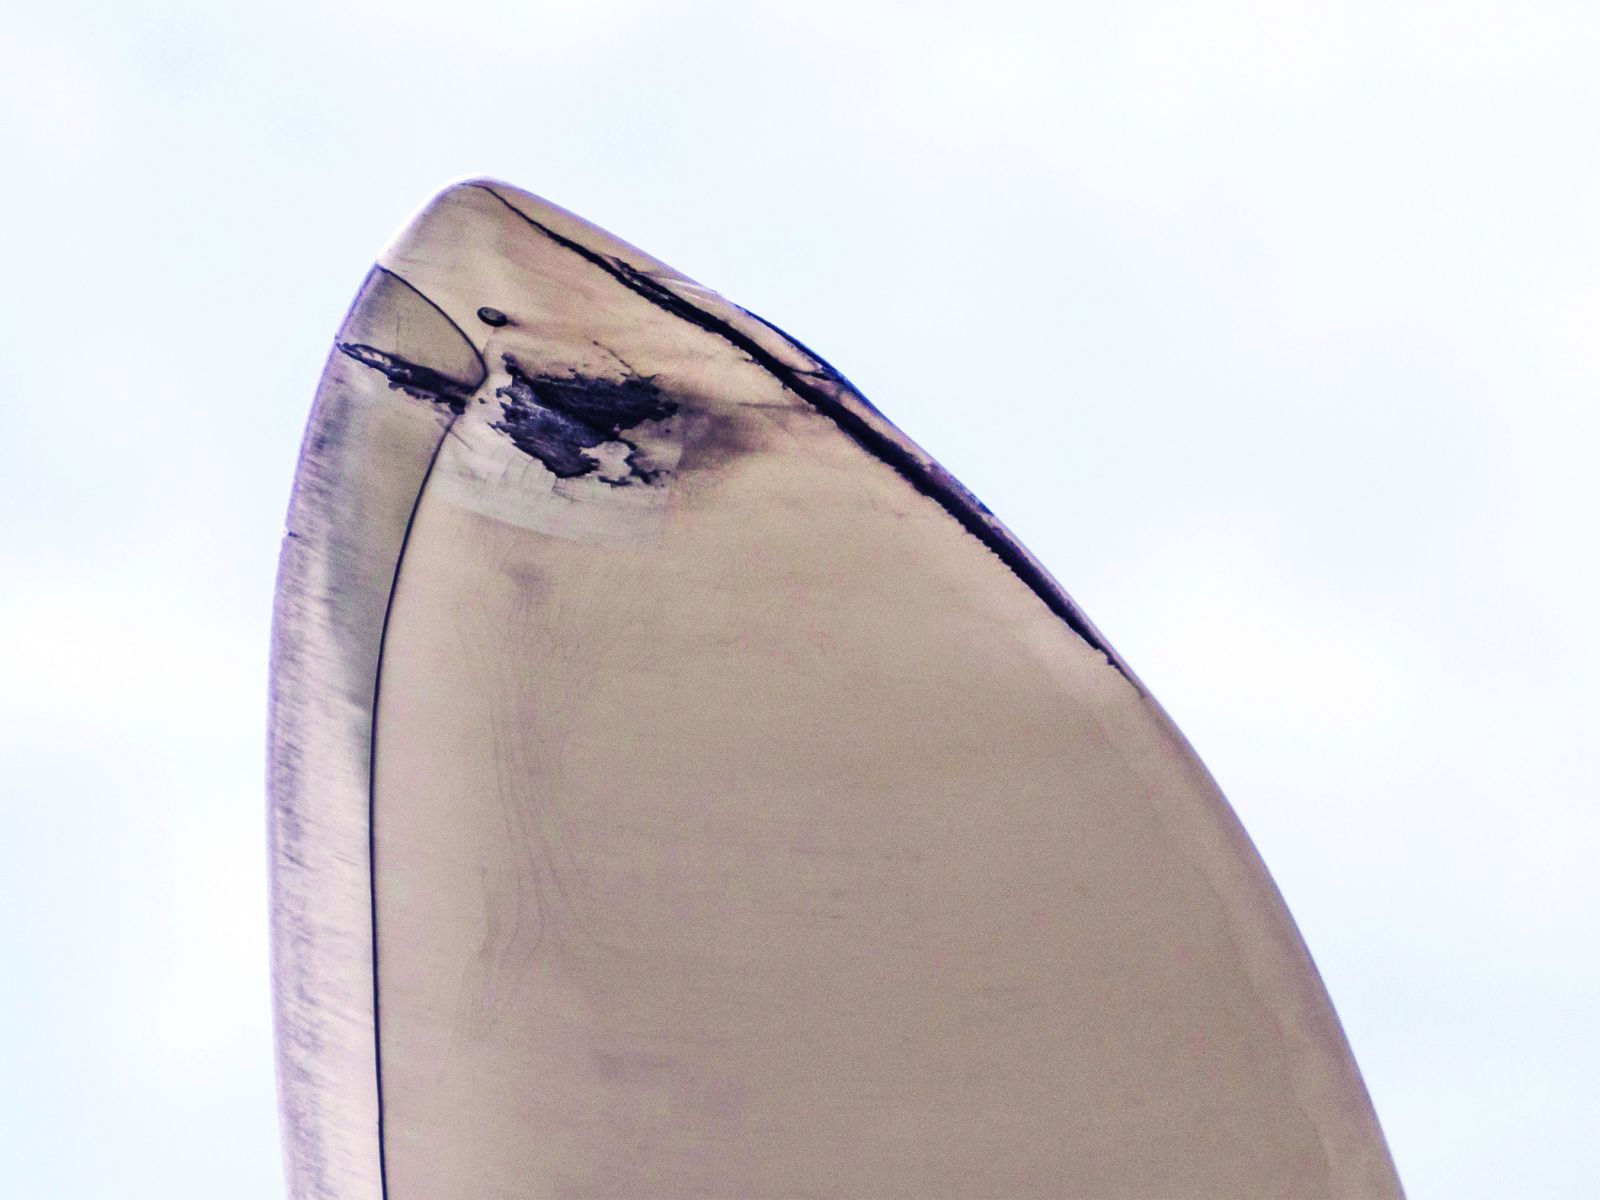 blade tip damage